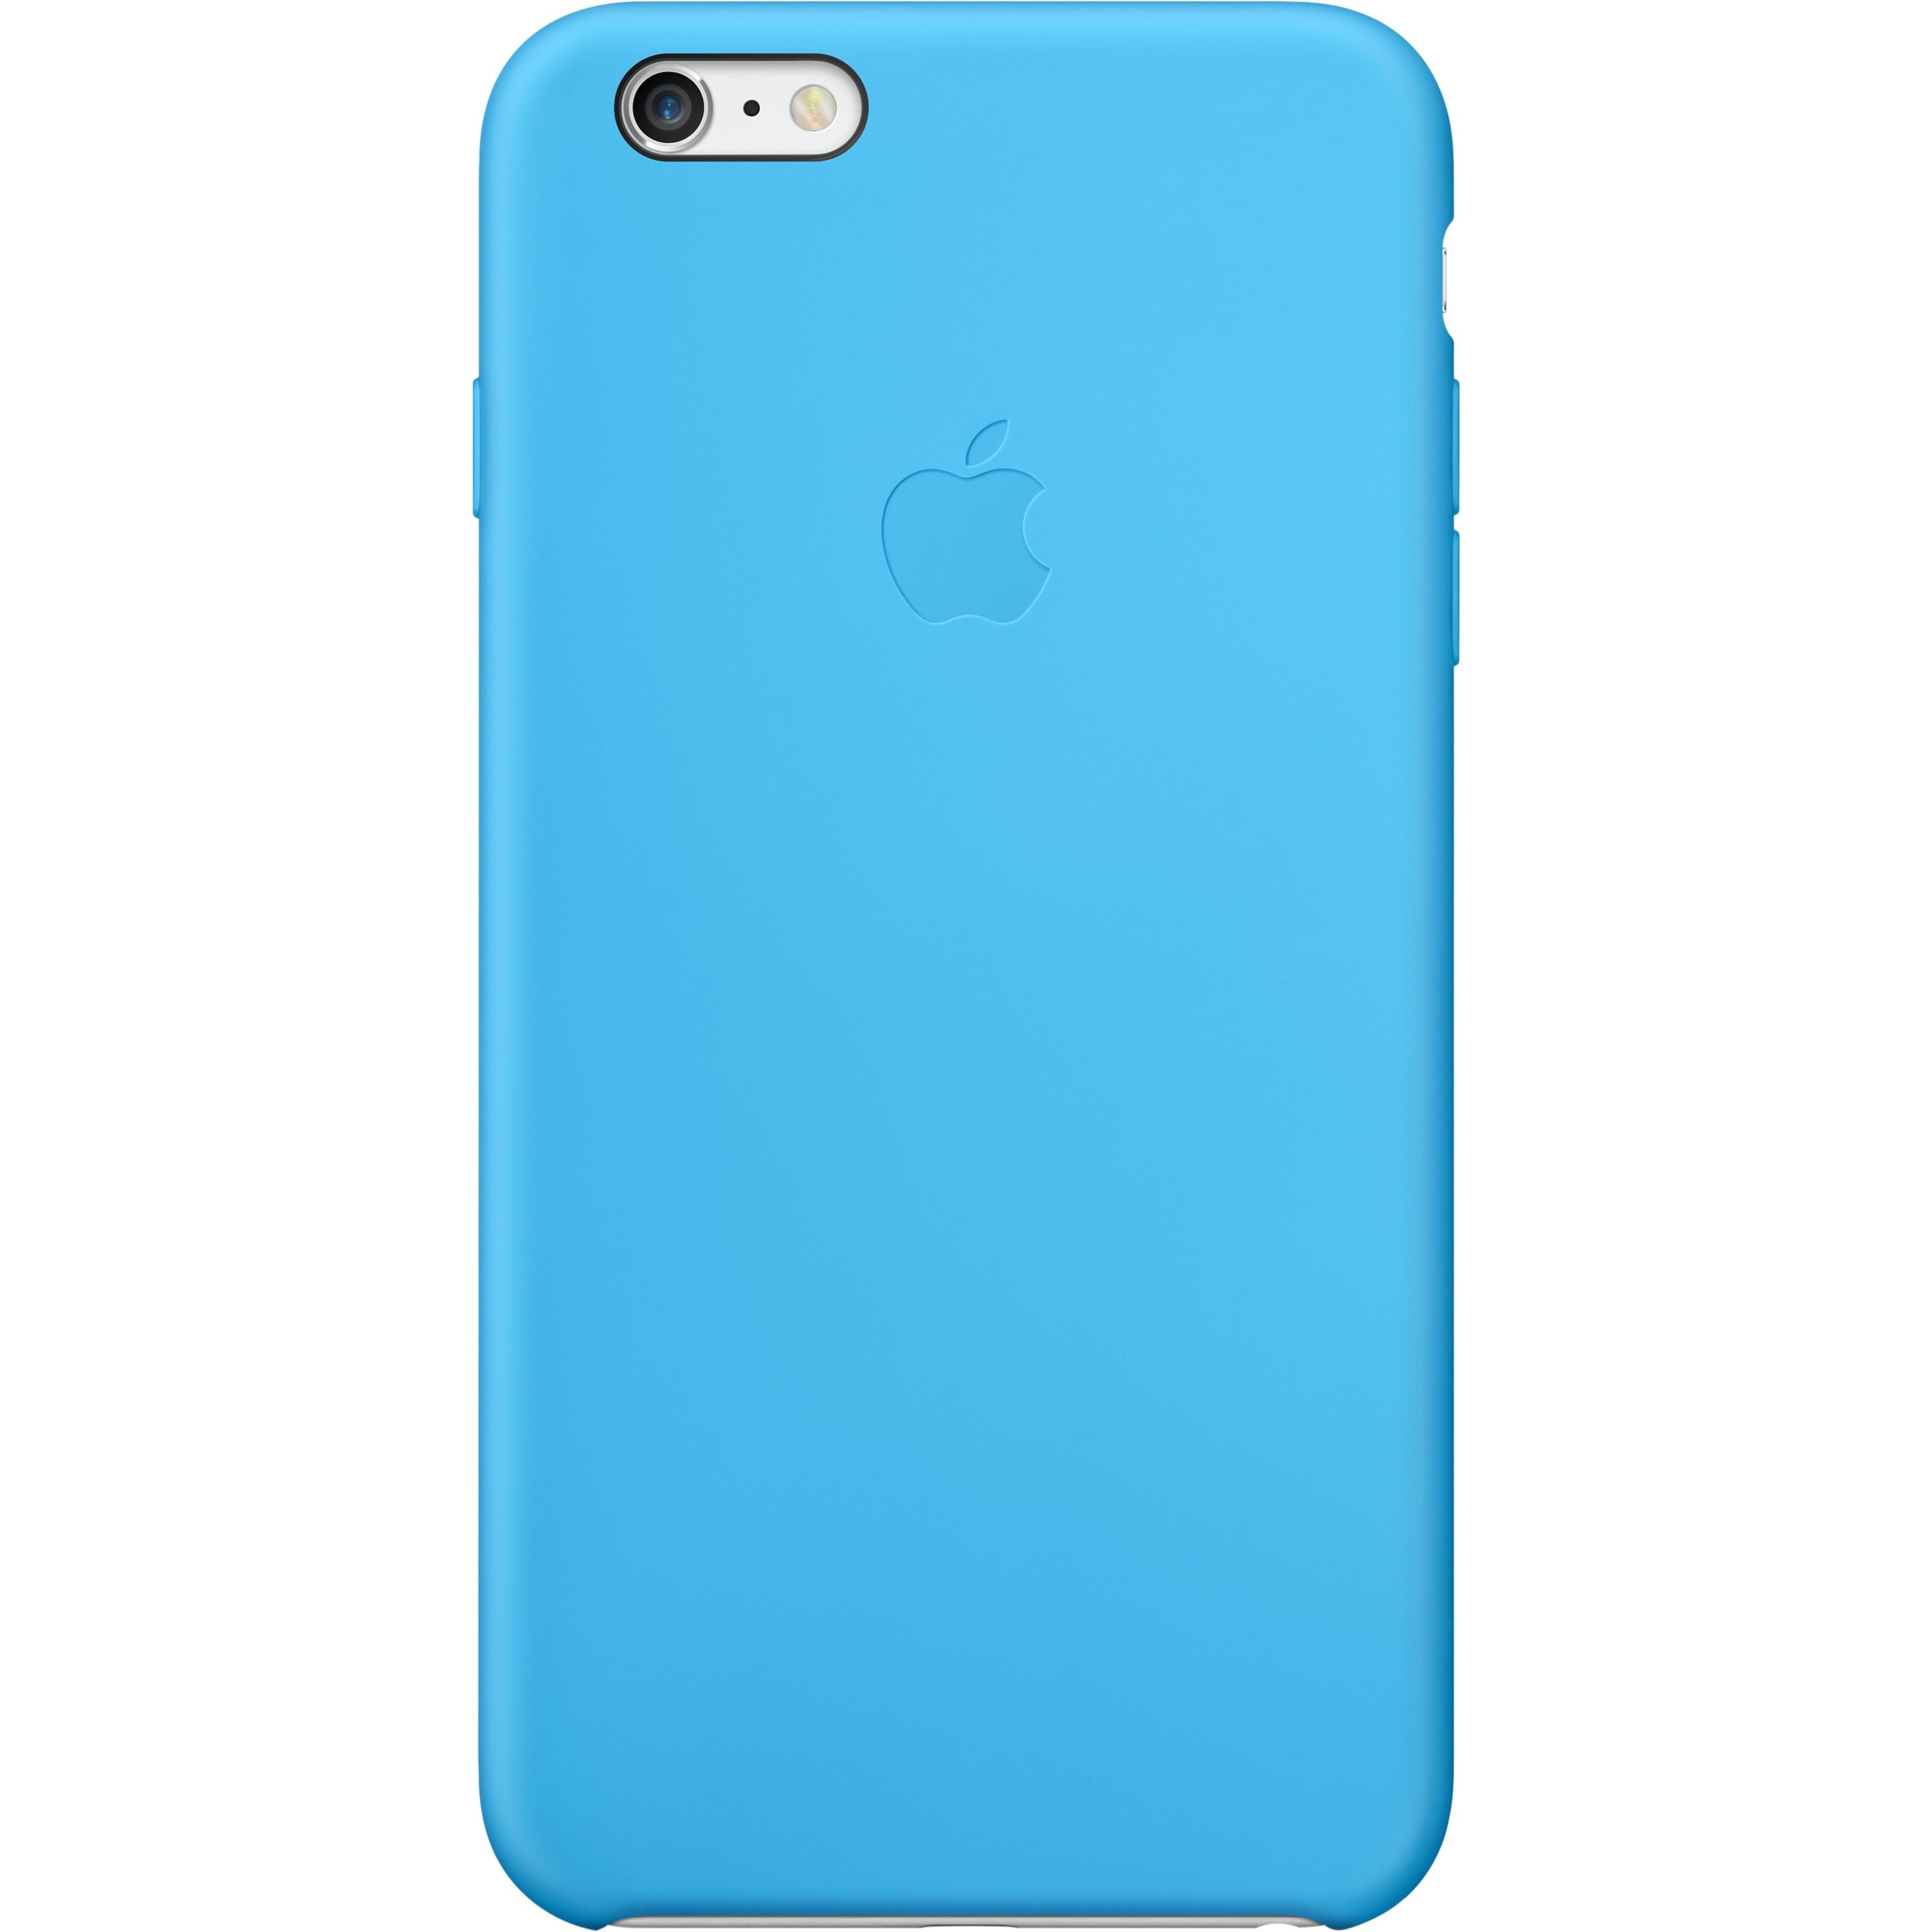 iPhone 6 Plus Silicone Case, Blue - Walmart.com